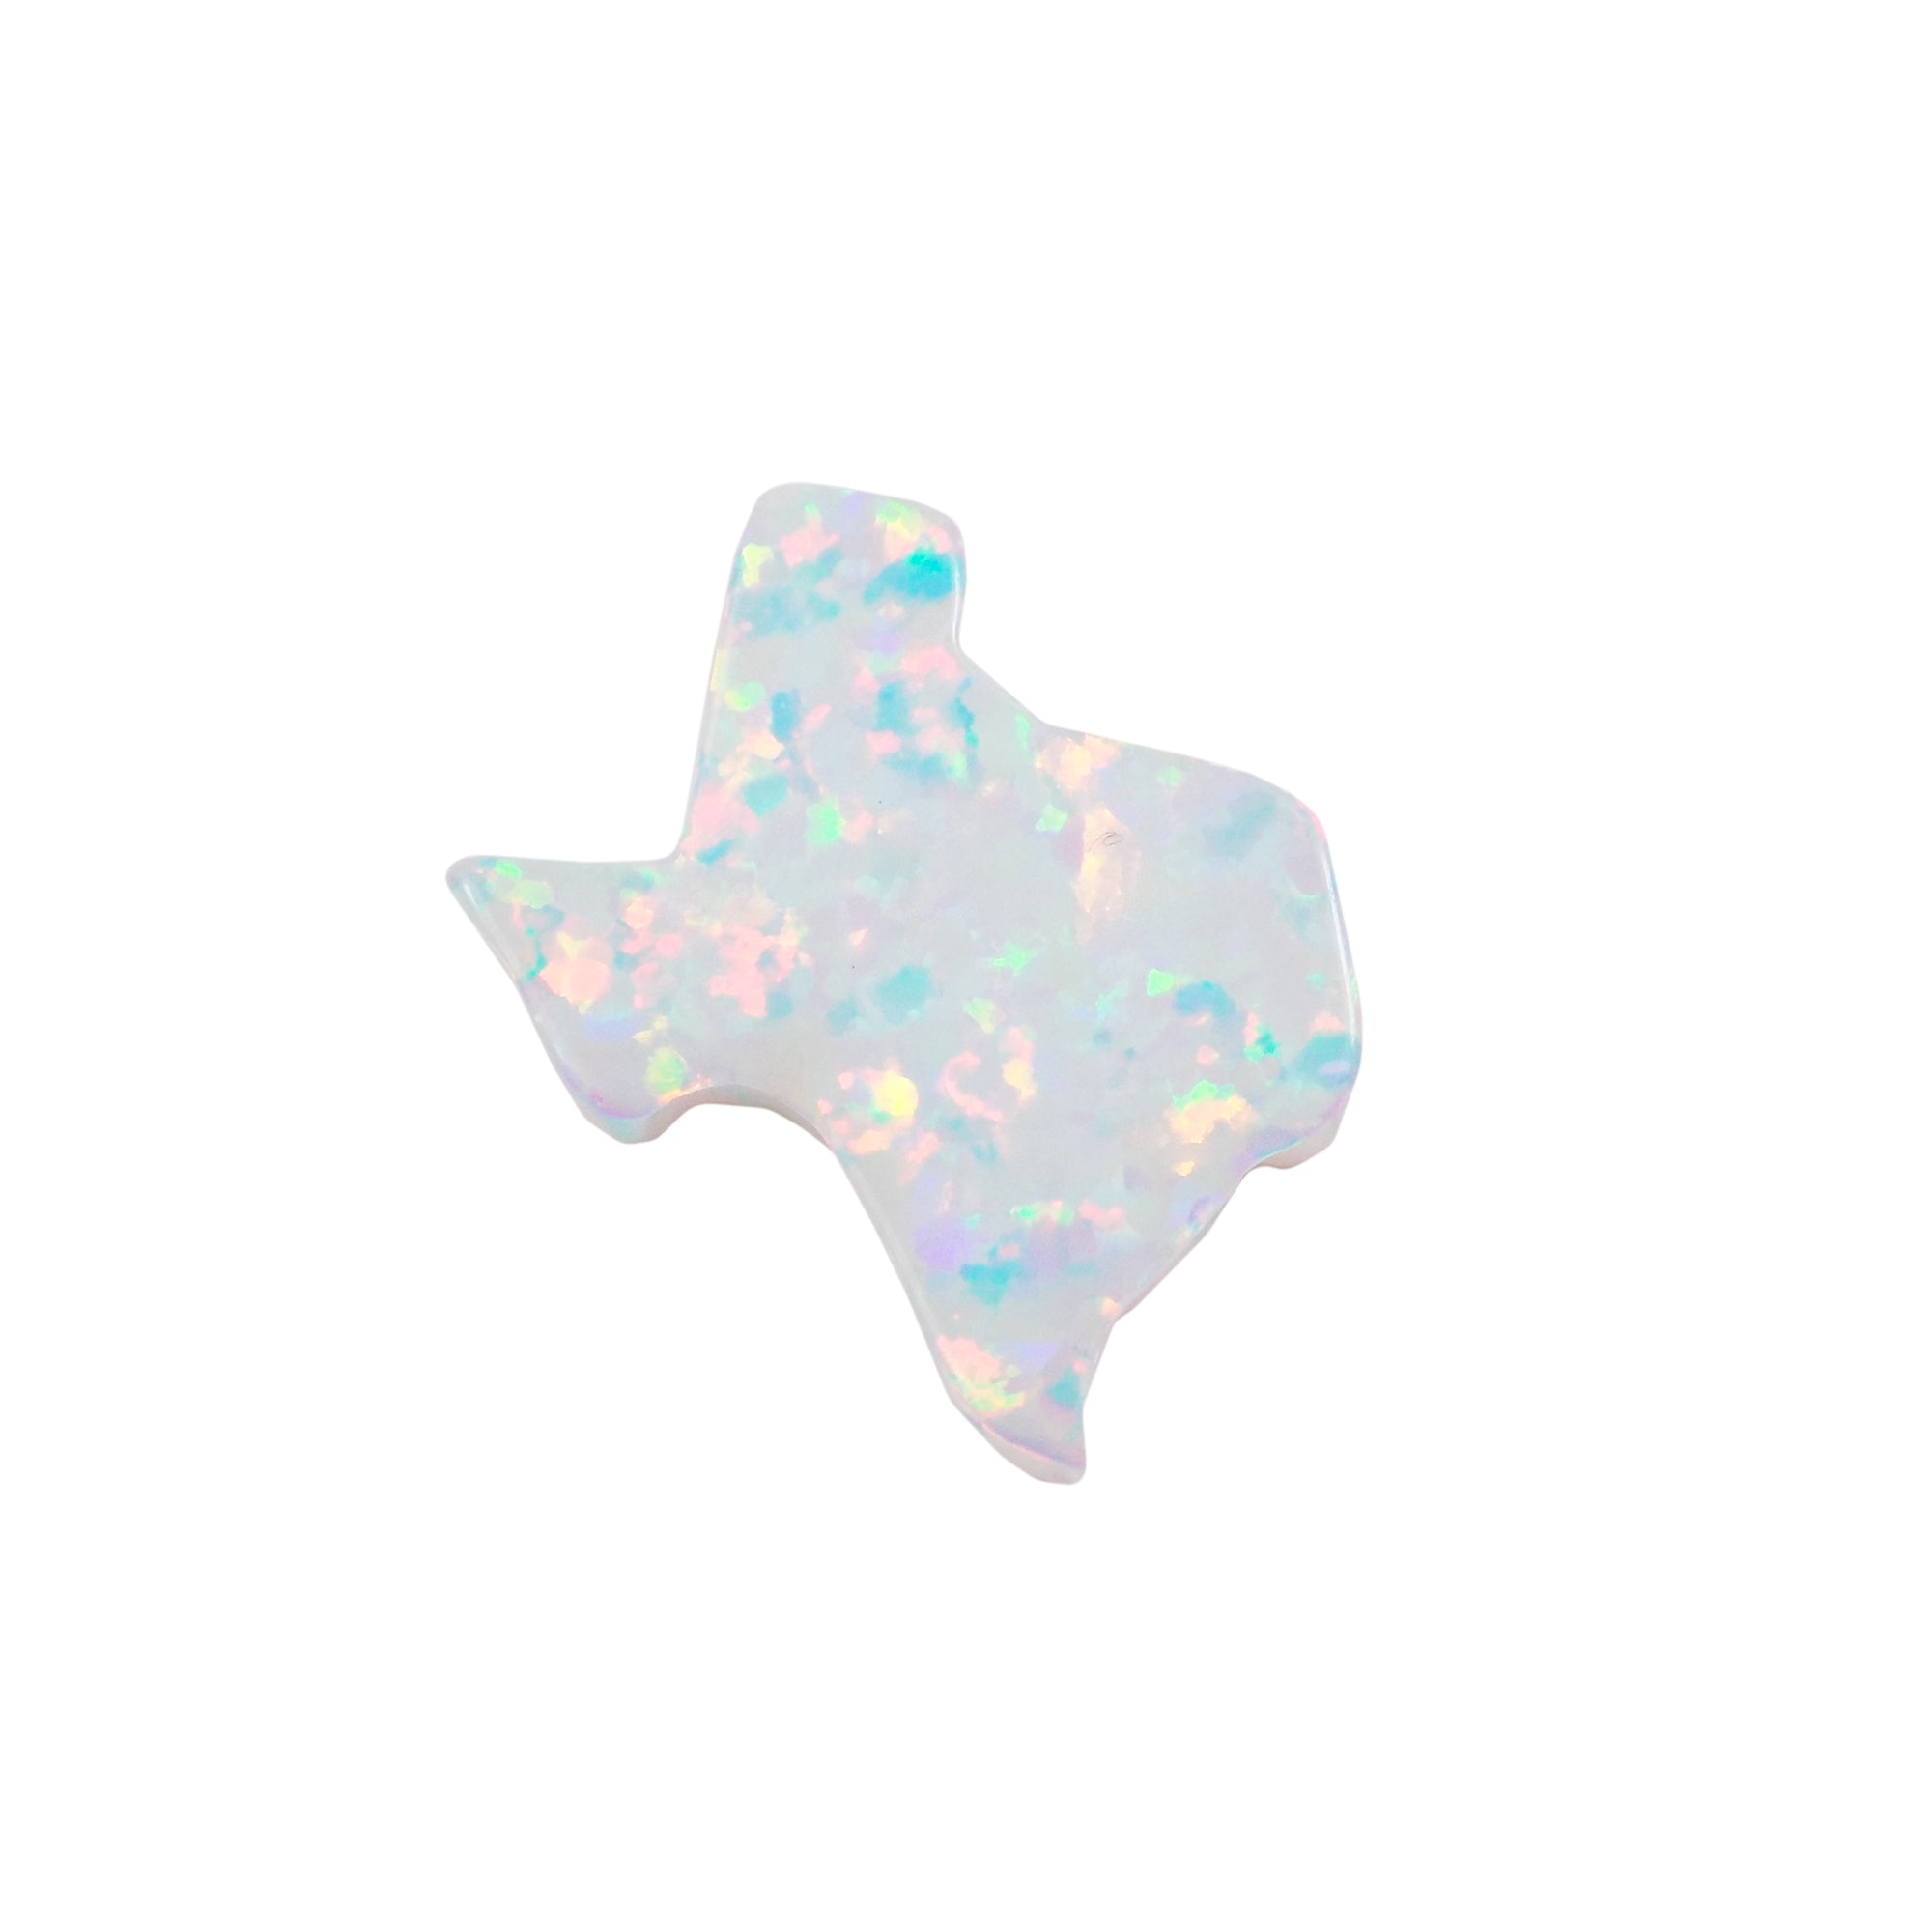 opal texas map pendant